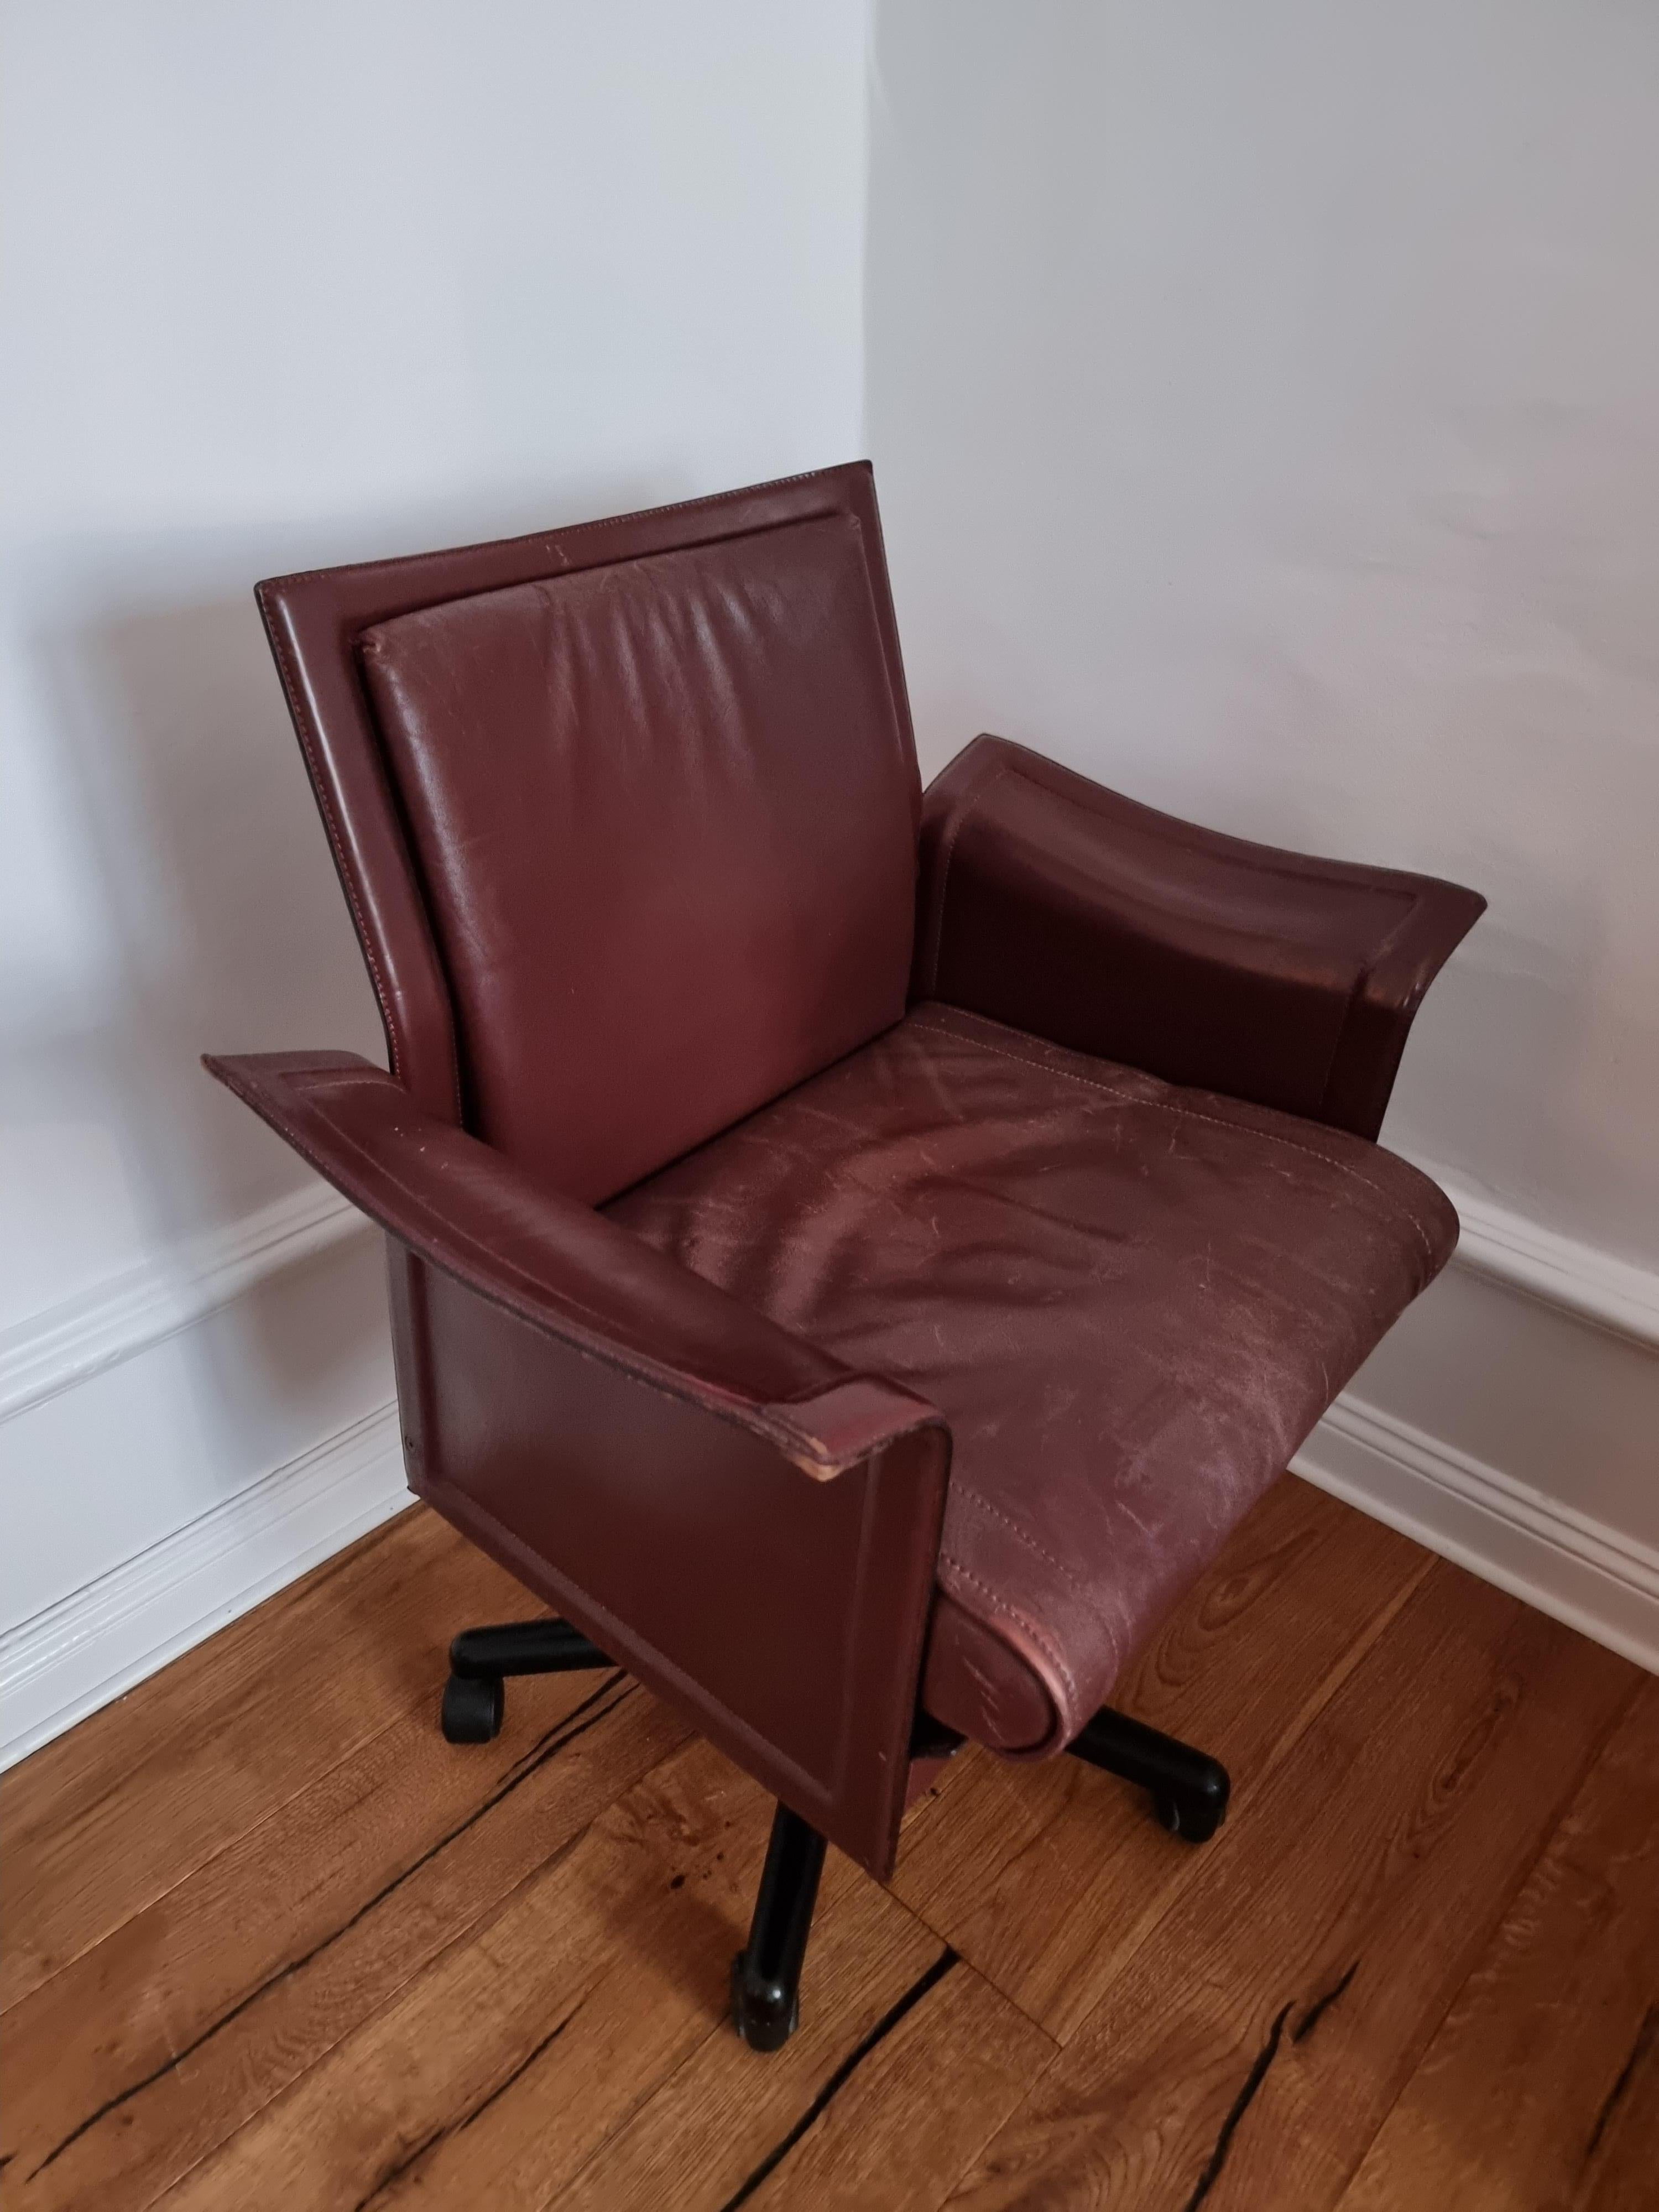 Tito Agnoli, Desk / Swivel Chair 